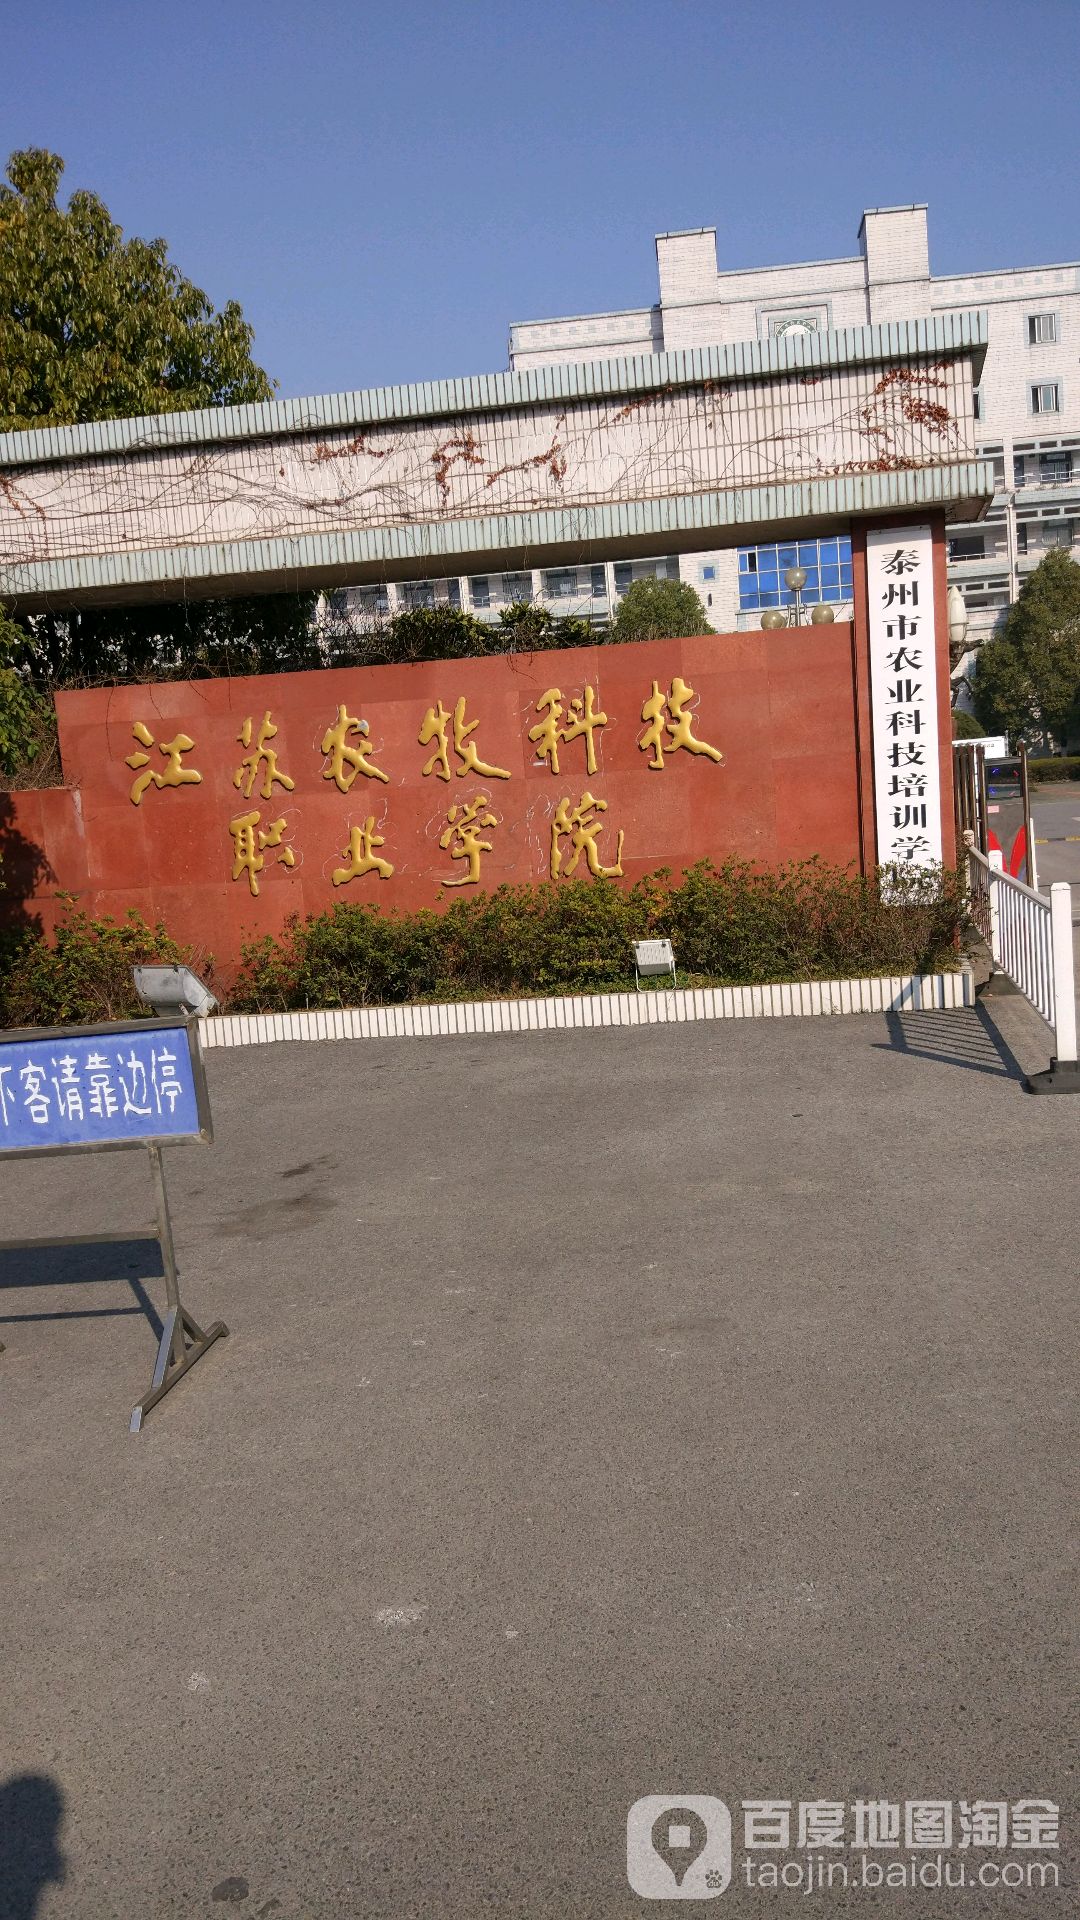 江苏农牧科技职业学校(迎宾路校区)